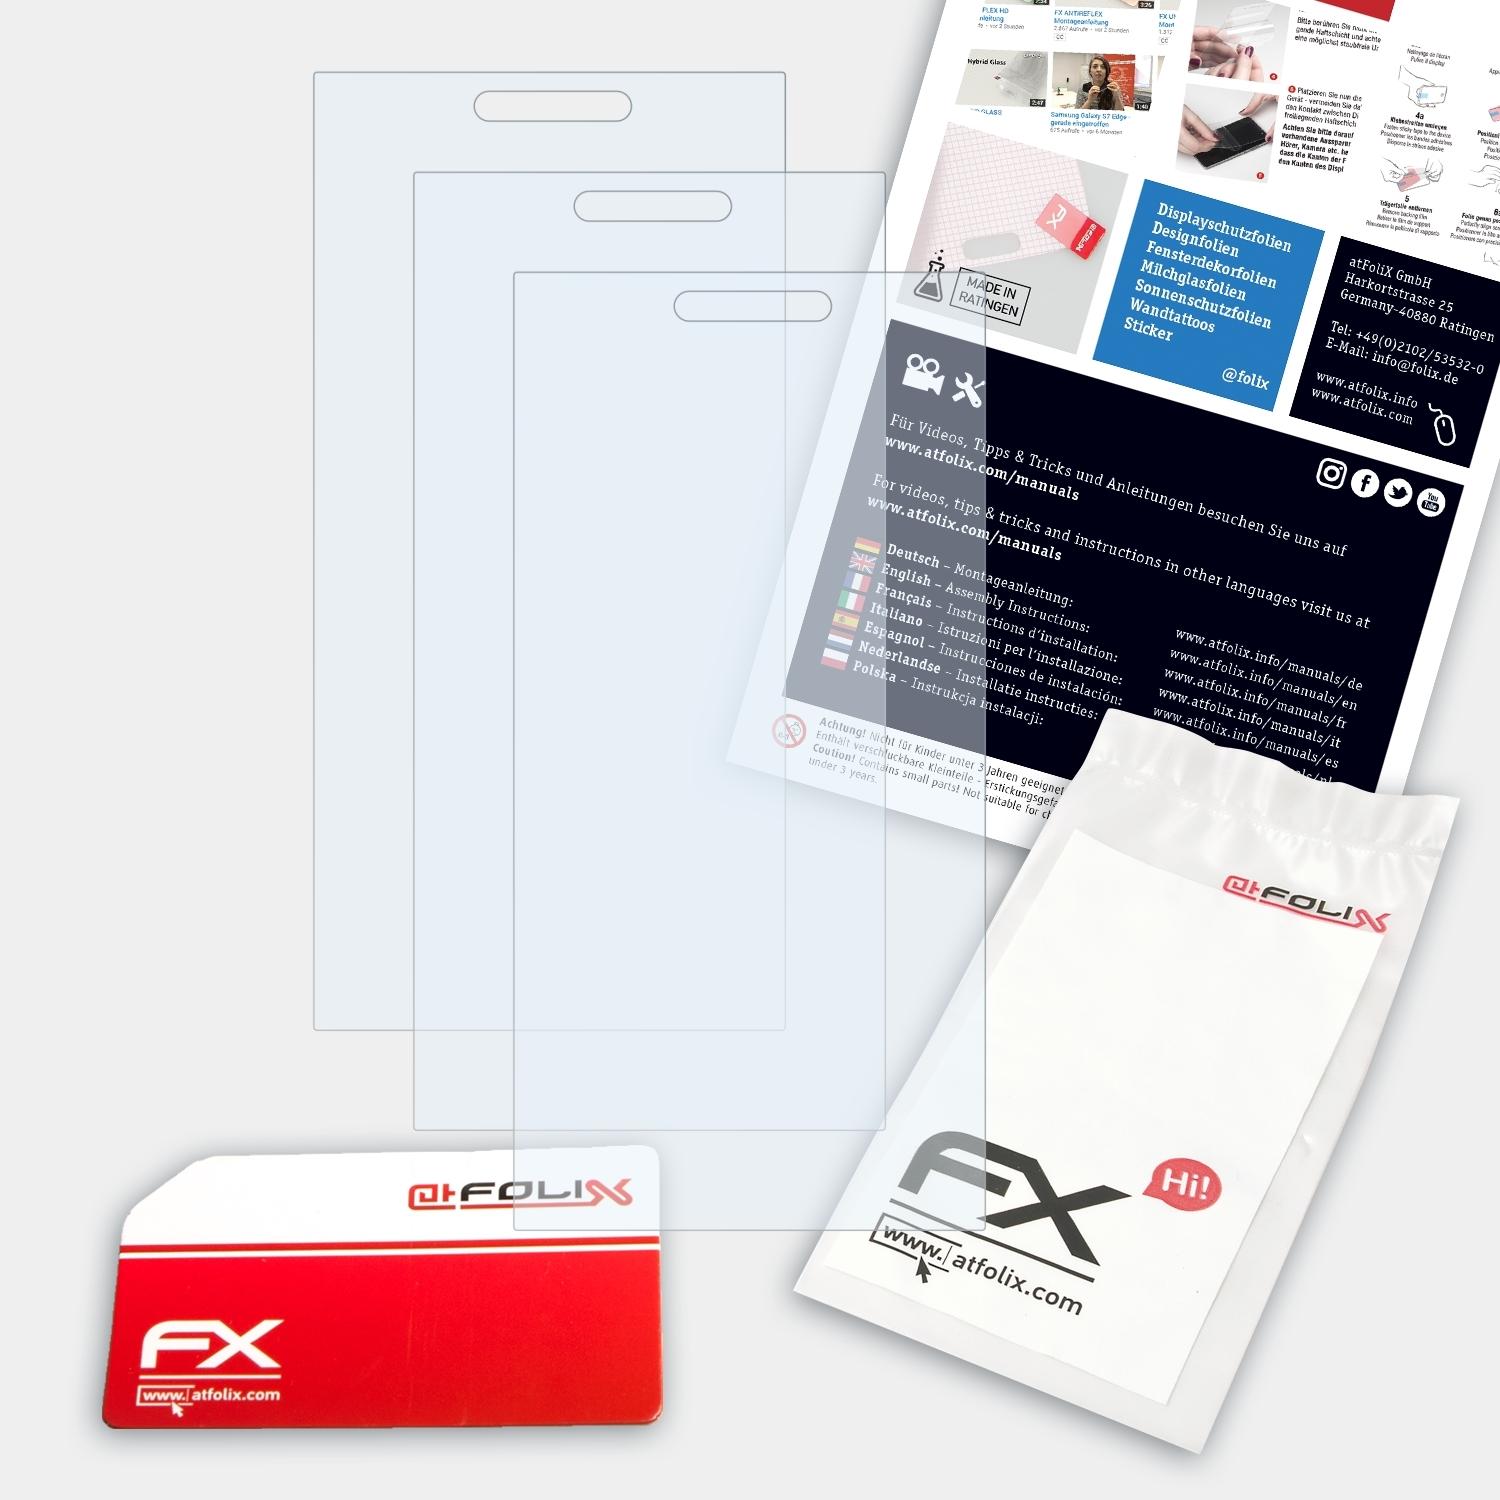 ATFOLIX 3x FX-Clear Displayschutz(für Sirin Finney)